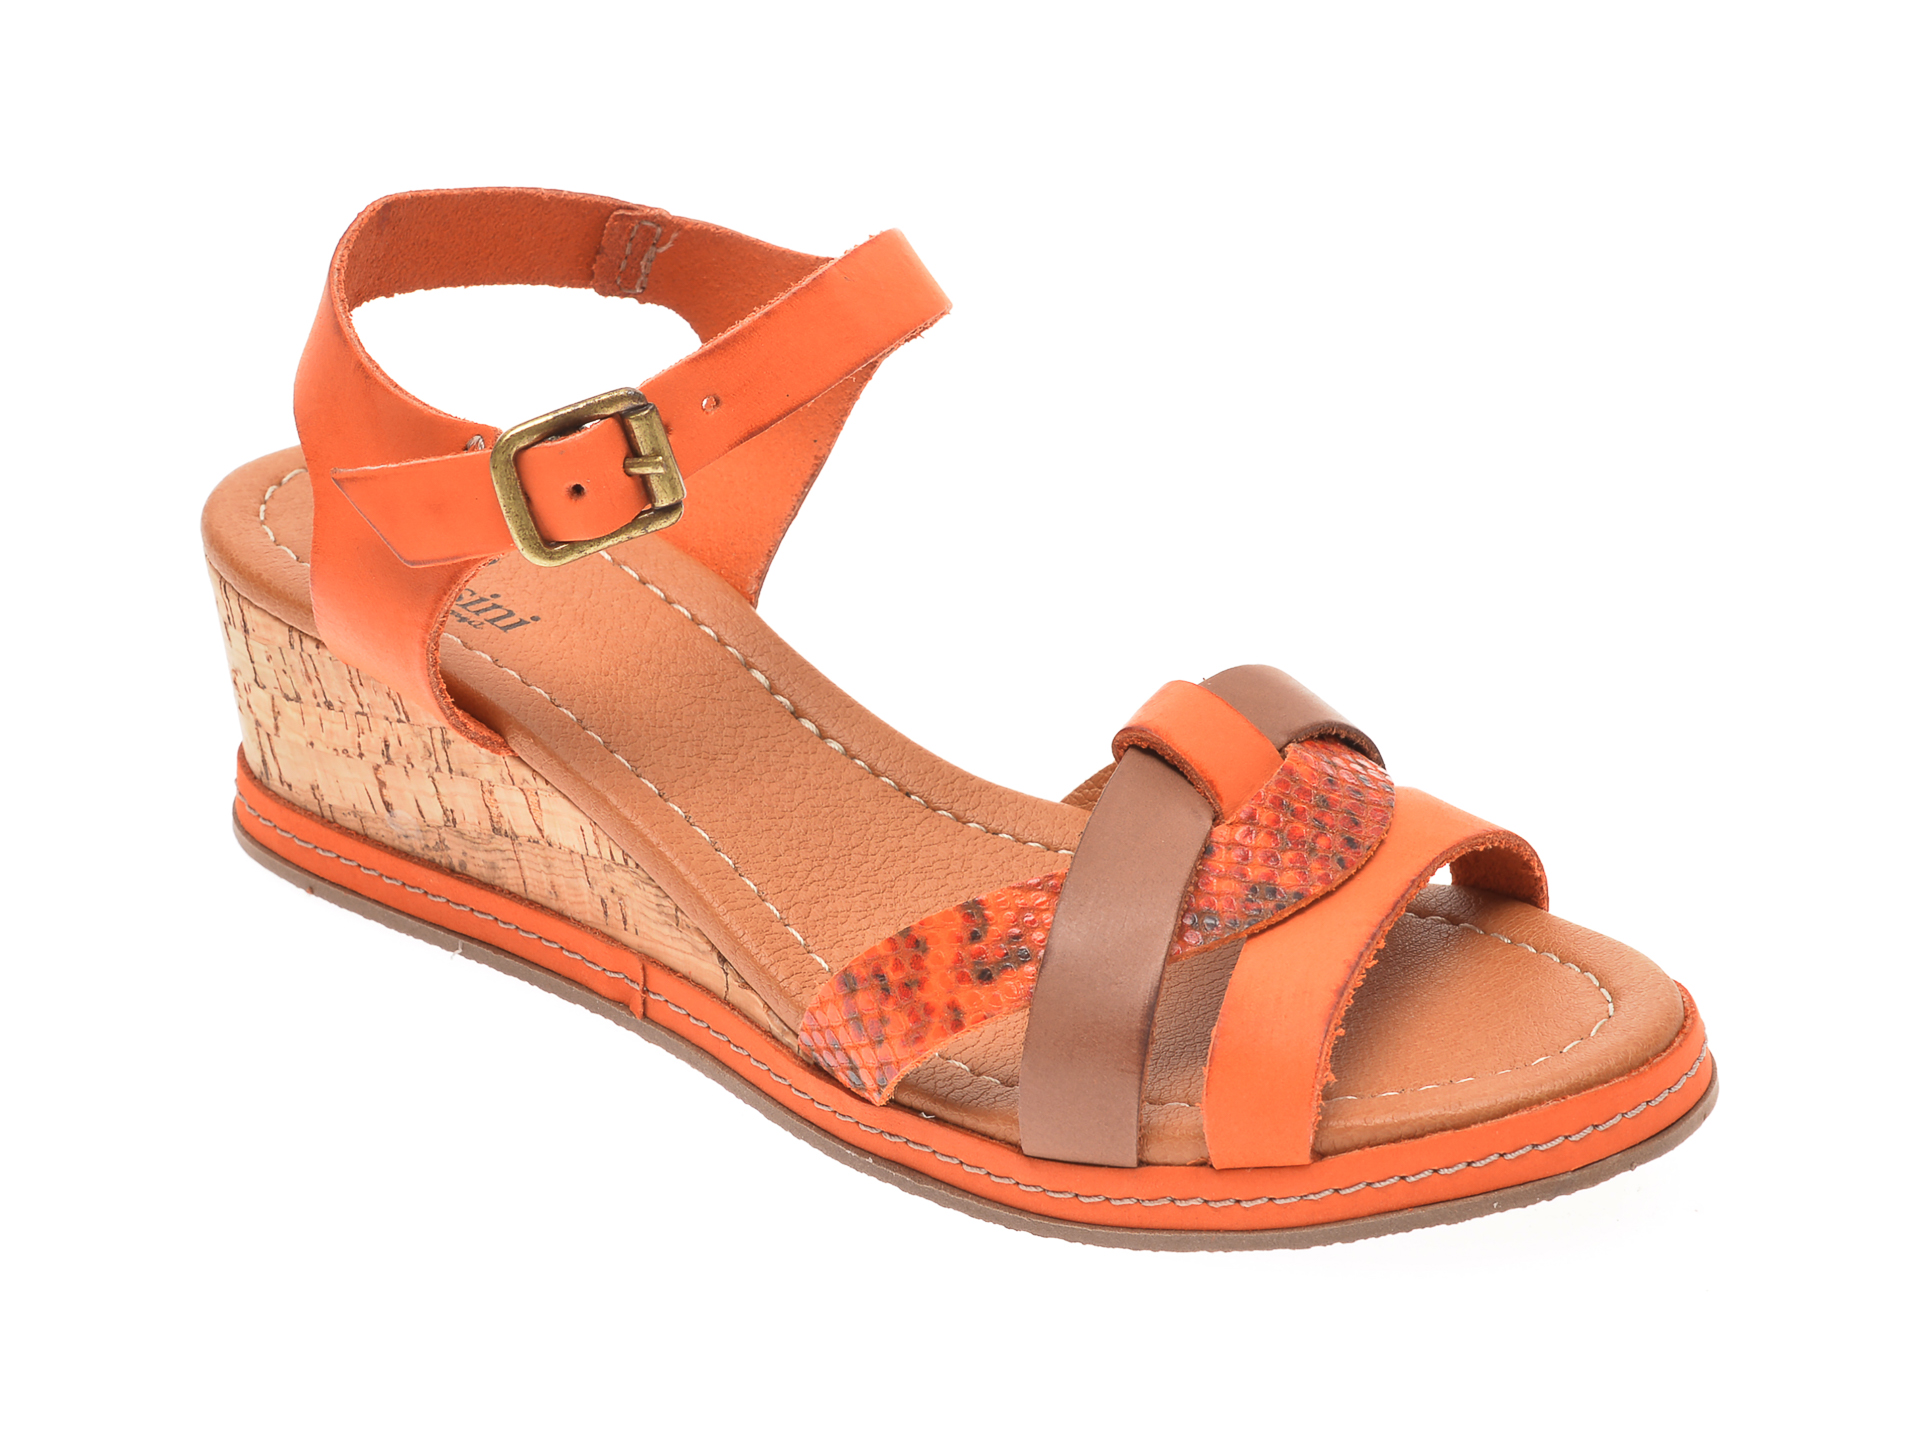 Sandale FLAVIA PASSINI portocalii, 22001, din piele naturala